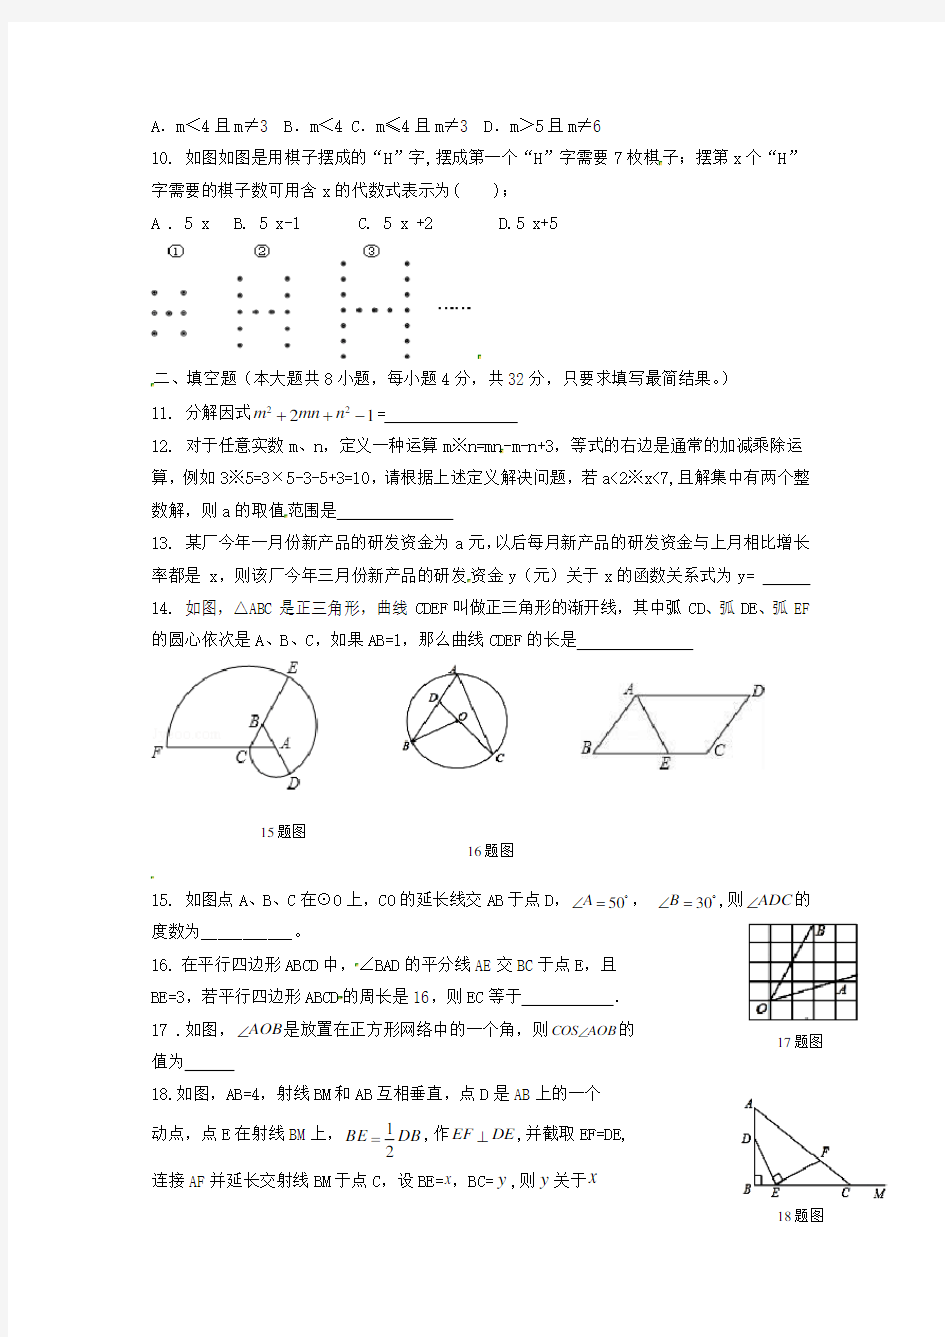 【2020年】甘肃省中考数学模拟试题